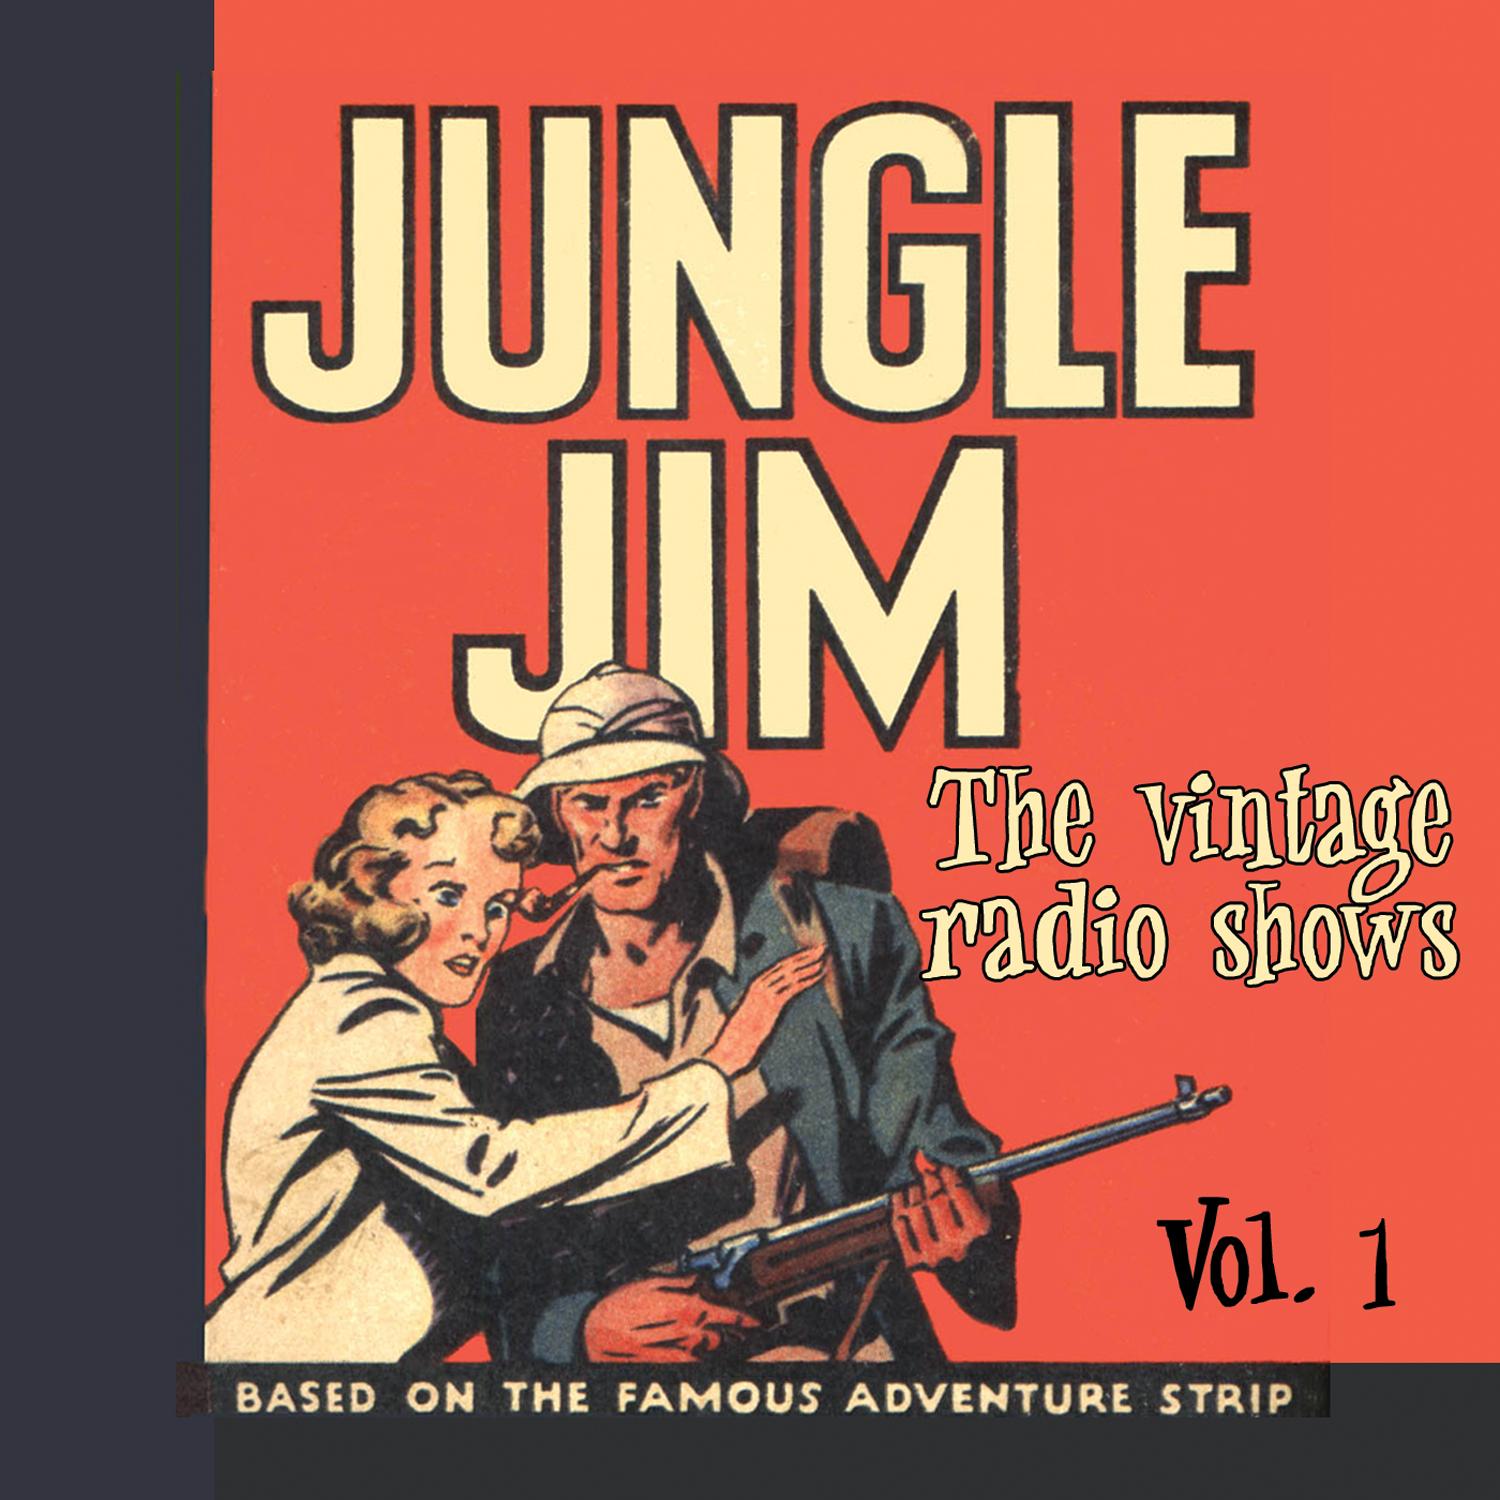 The Vintage Radio Shows Vol. 1